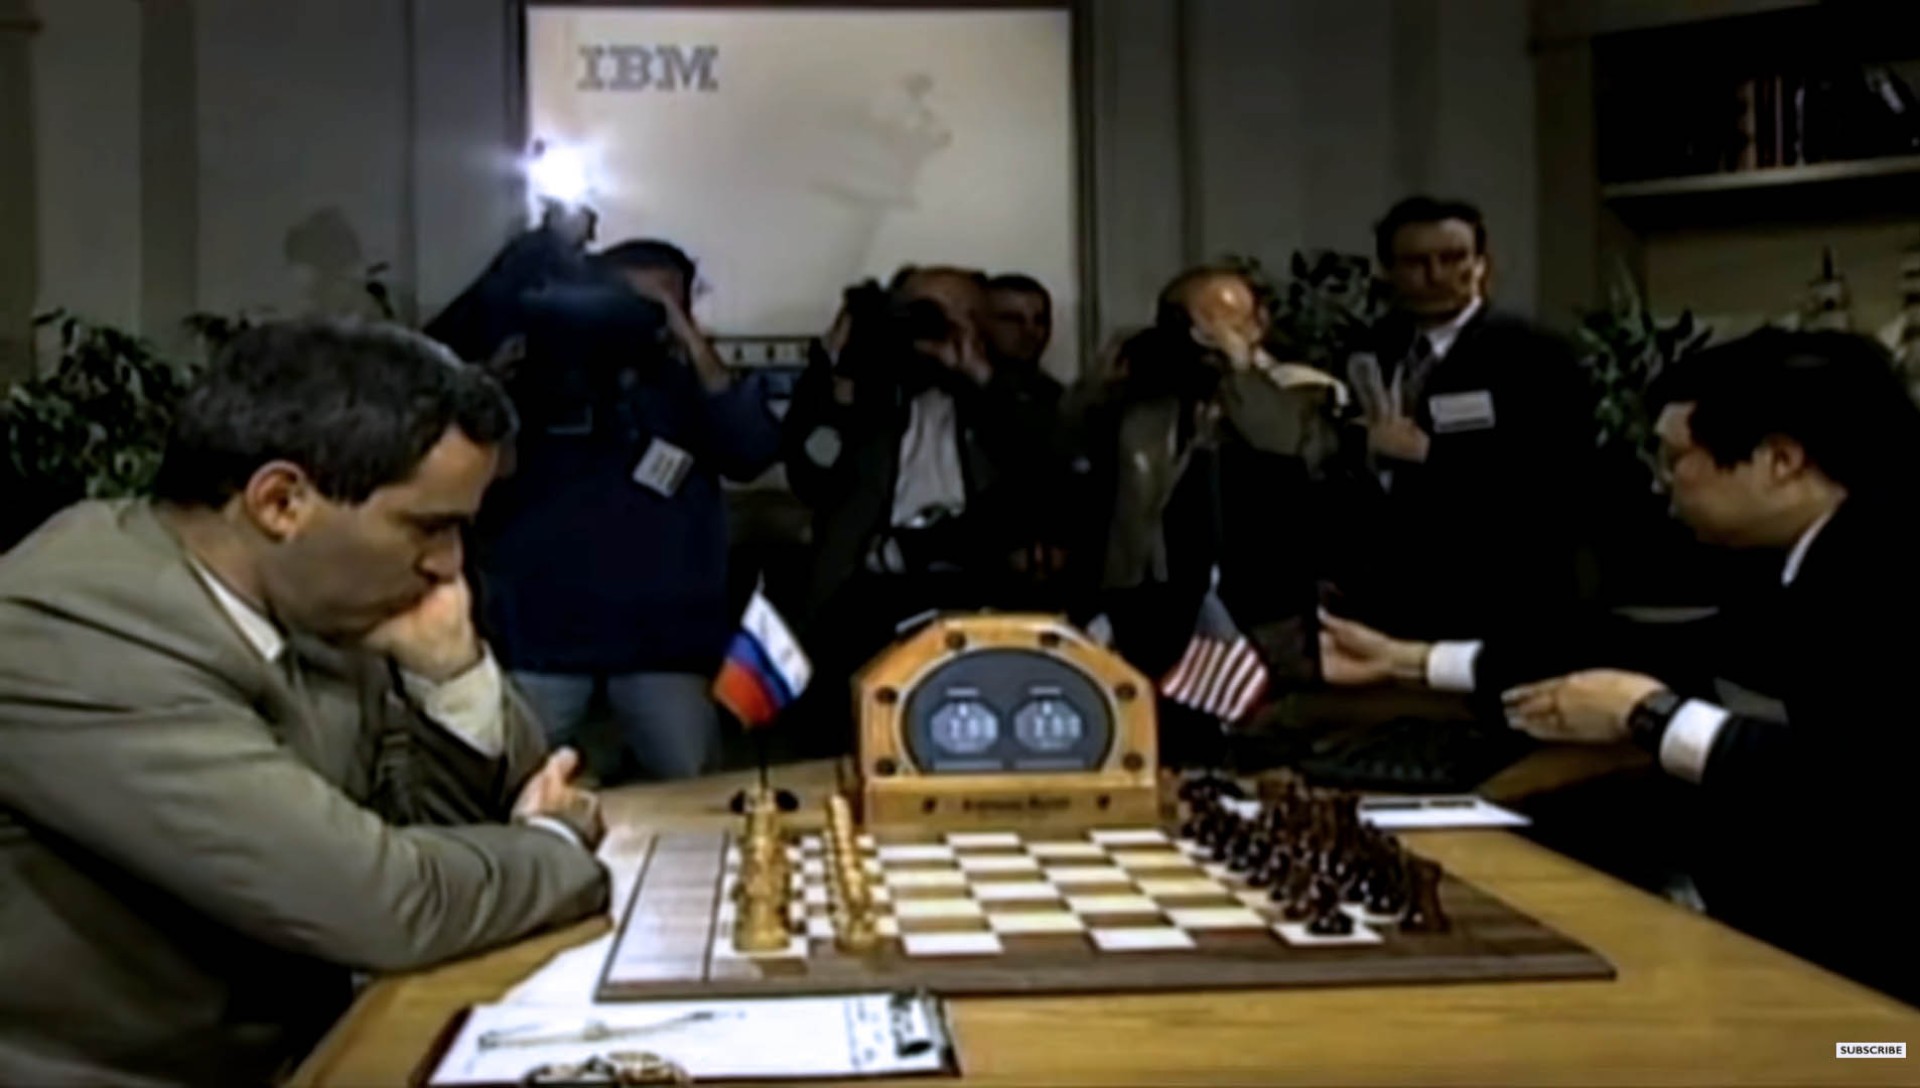 Momento della celebre partita a scacchi nel 1997 tra il campione russo Garry Kasparov e il computer Deep Blue sviluppato da IBM